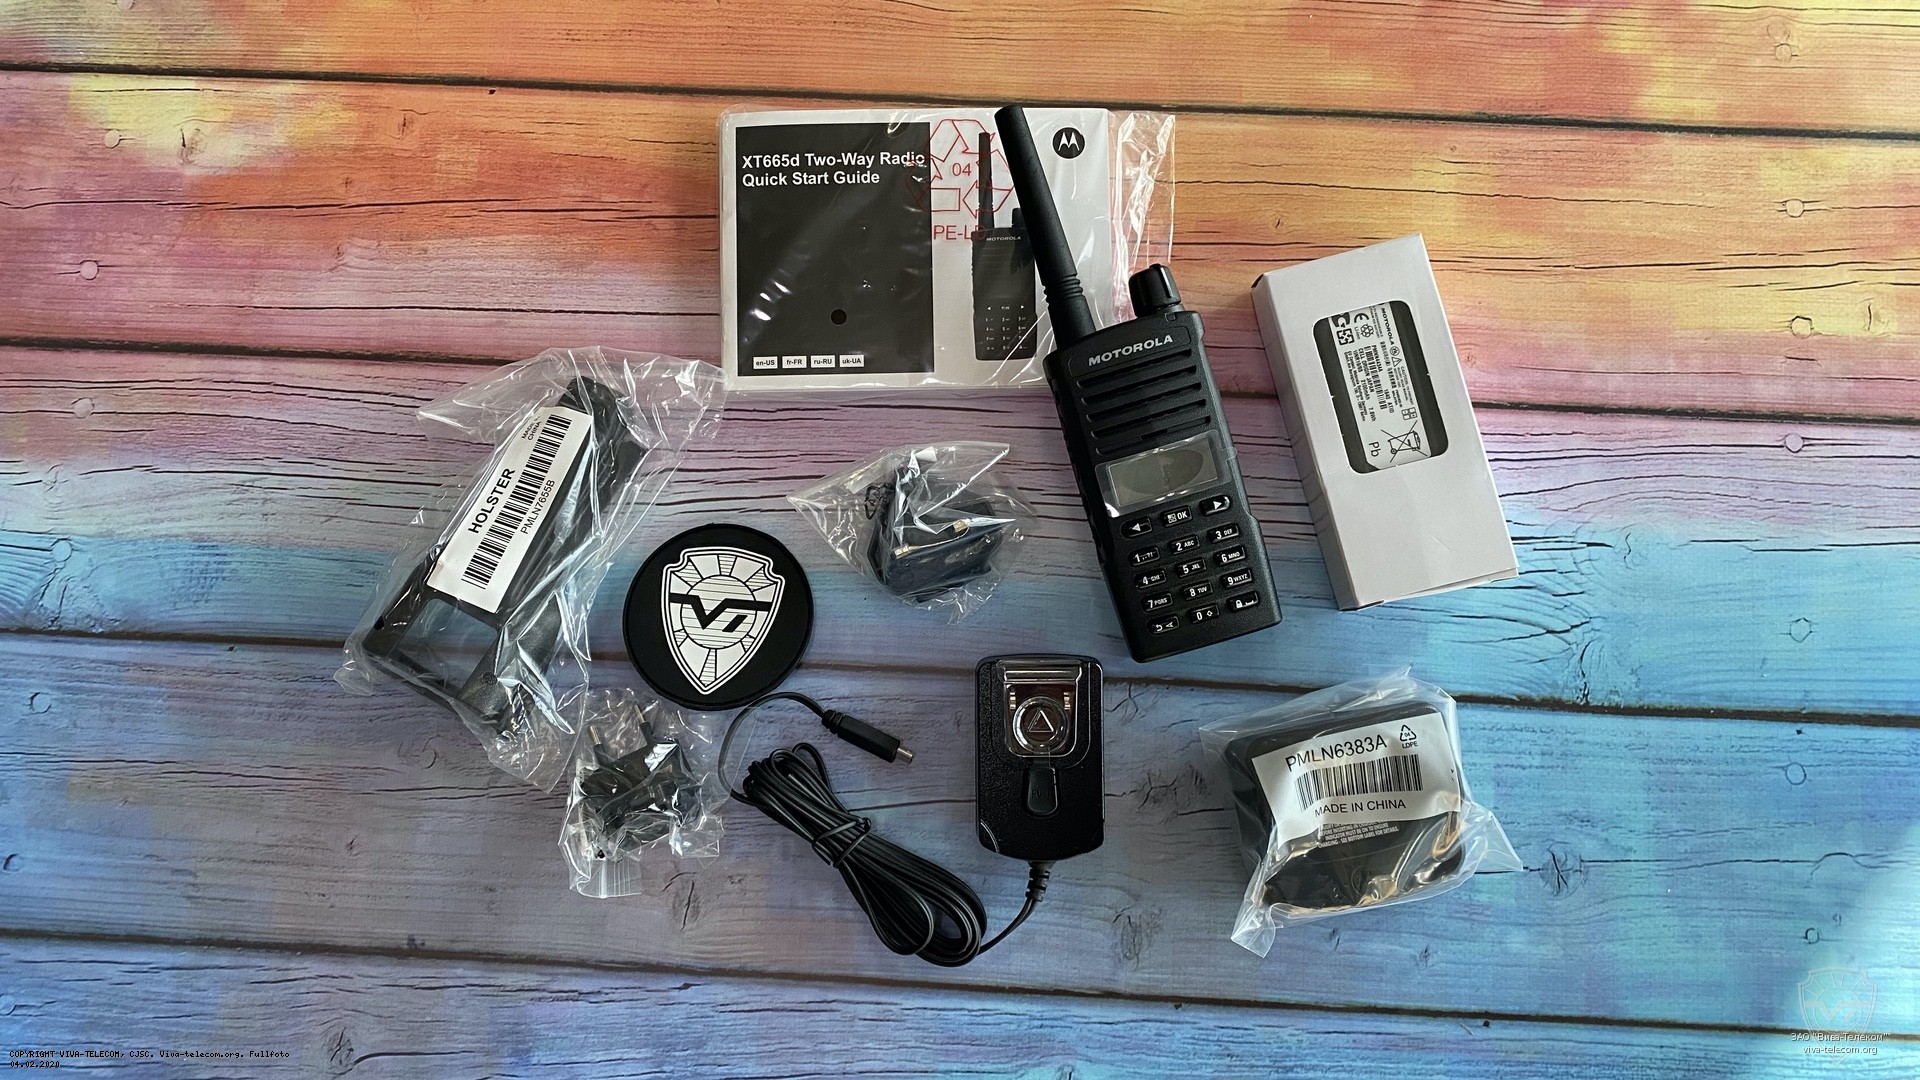   Motorola XT665d